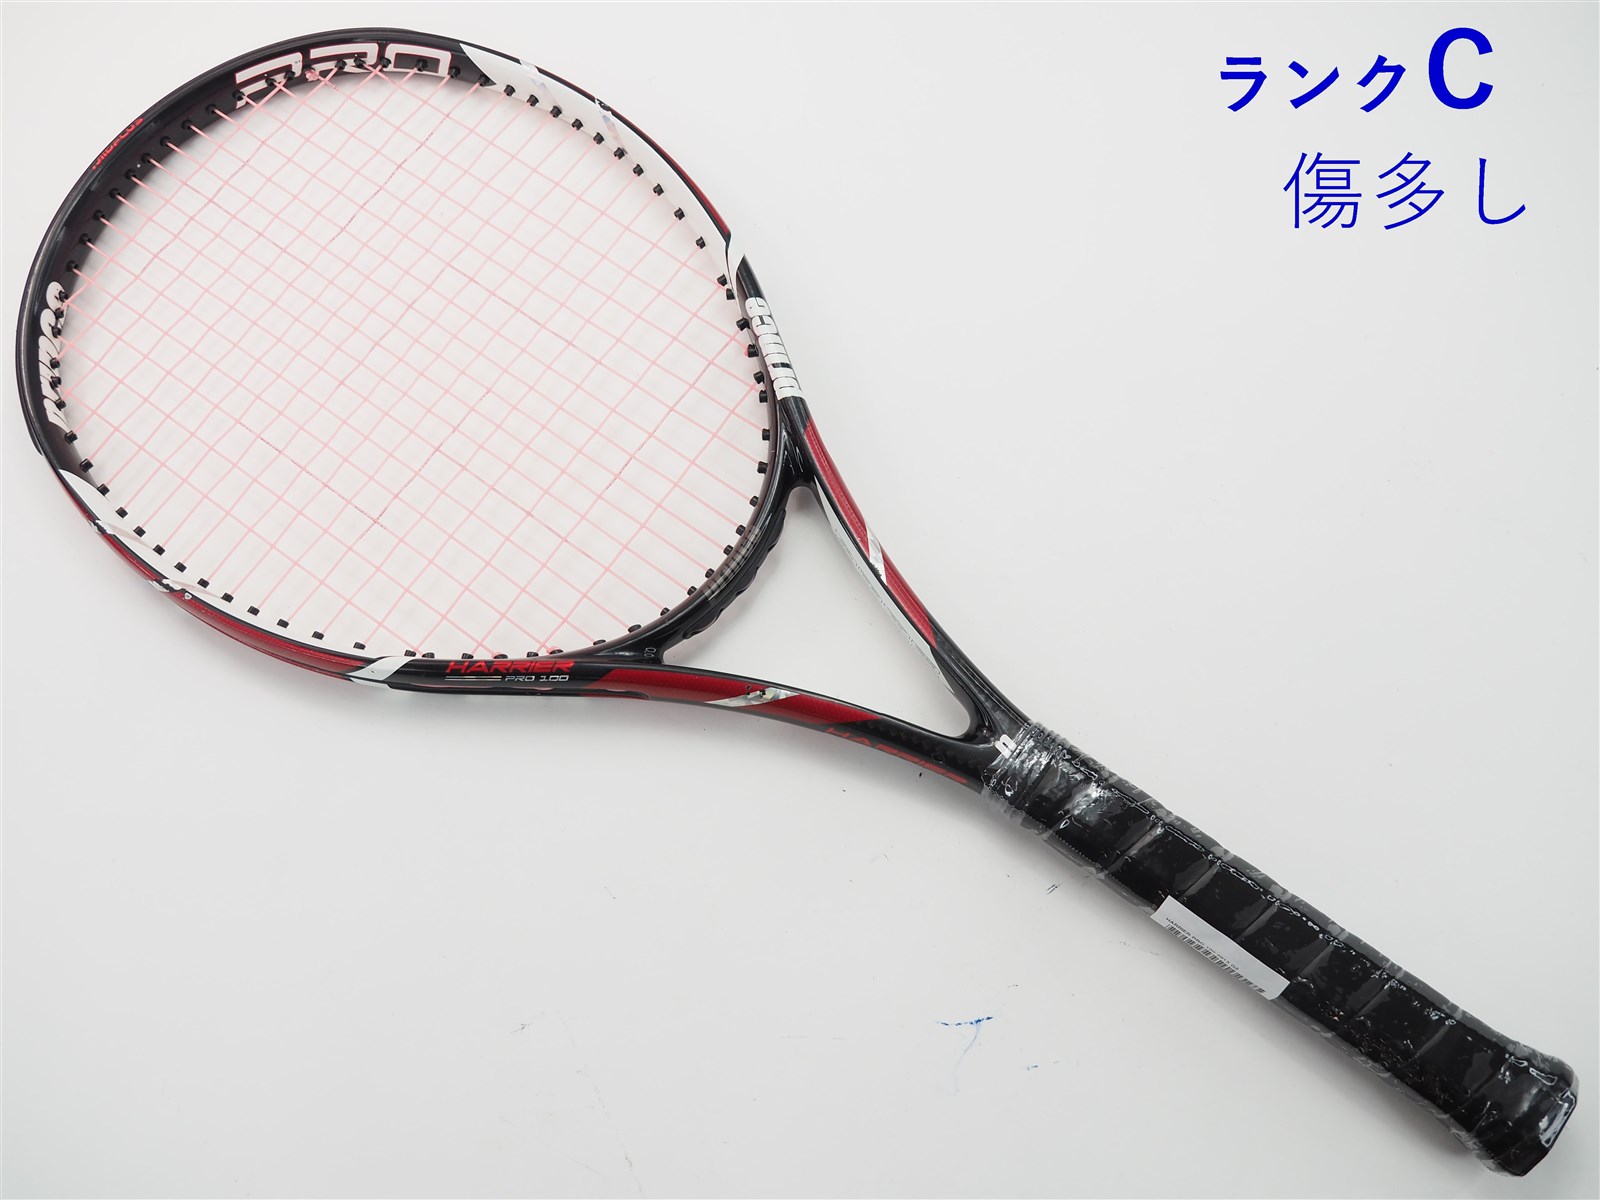 売れ筋公式 中古 テニスラケット プリンス ハリアー プロ 100 2013年